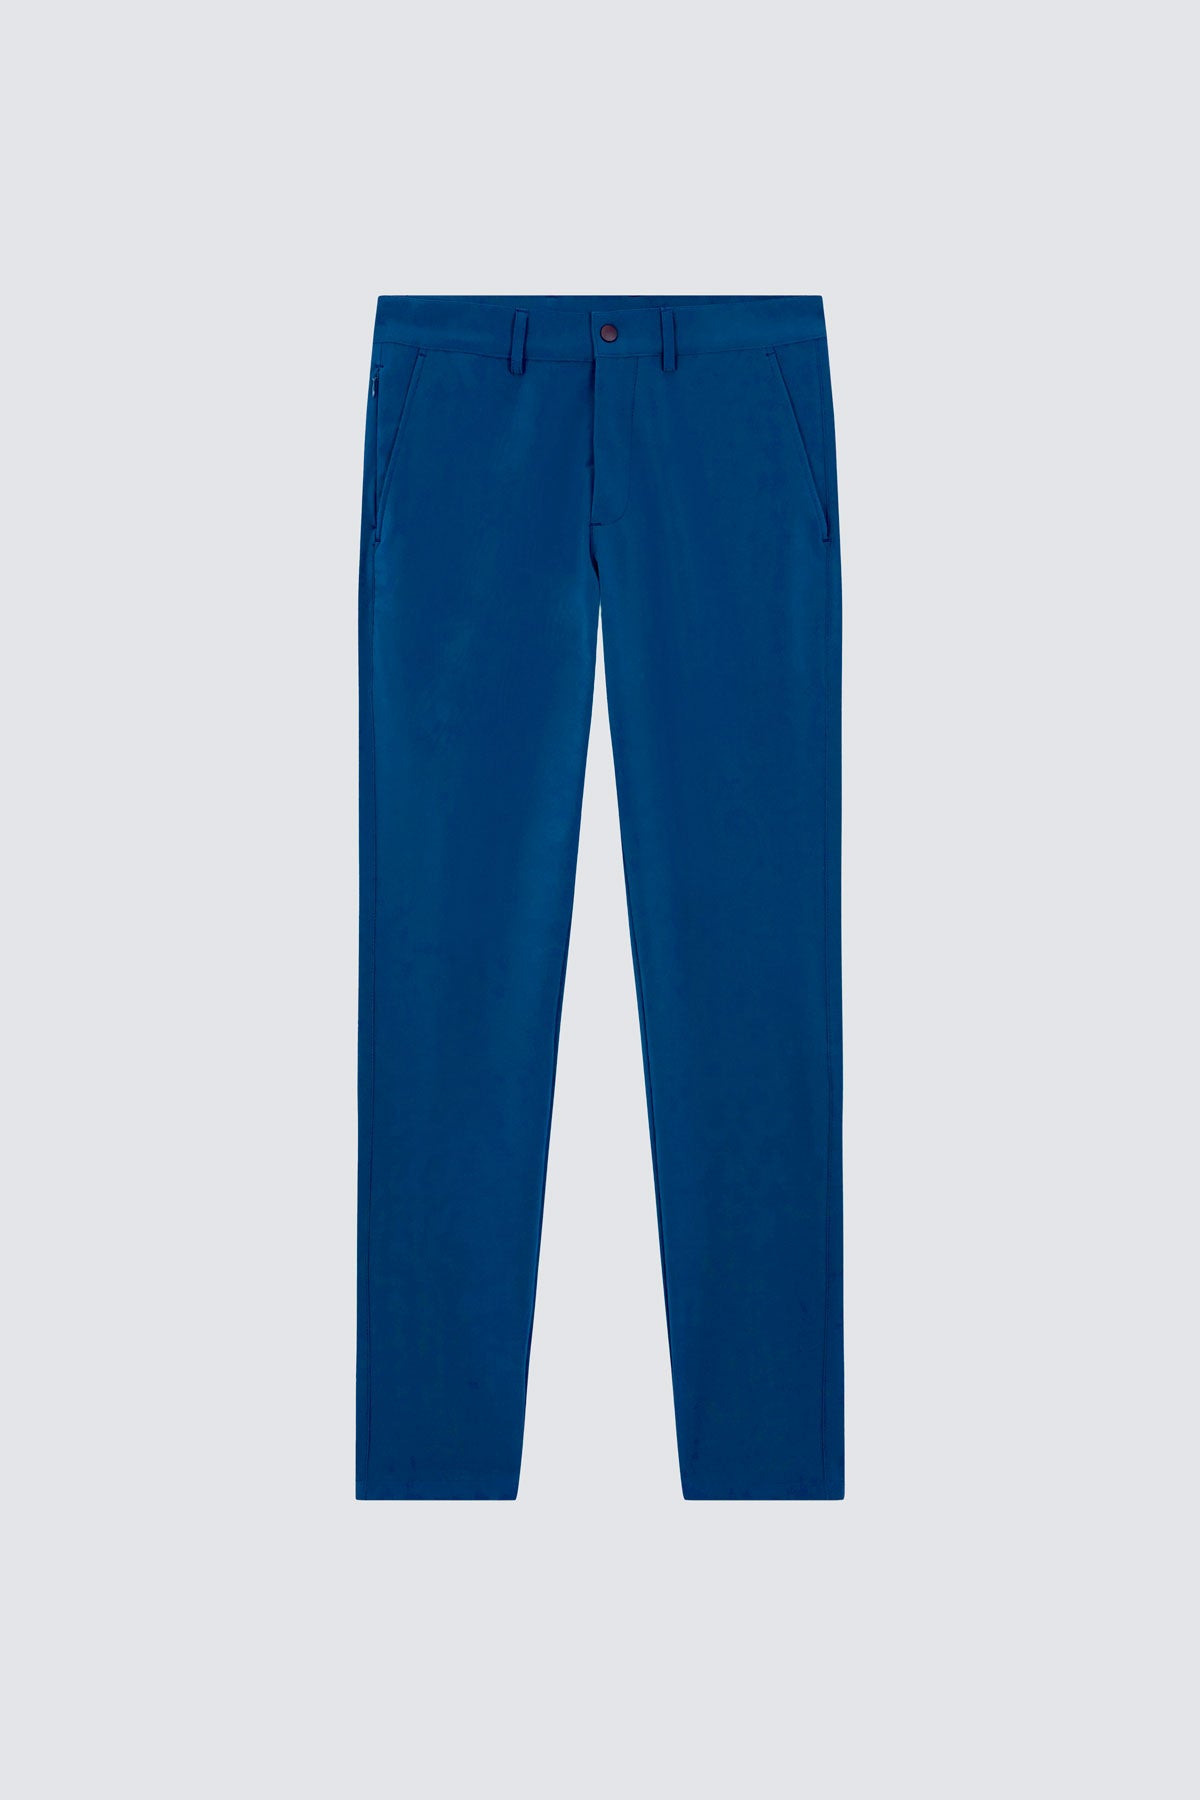 Pantalón para hombre azul marino: Pantalón chino slim azul marino para hombre con tecnología termorreguladora Coolmax. Foto prenda en plano